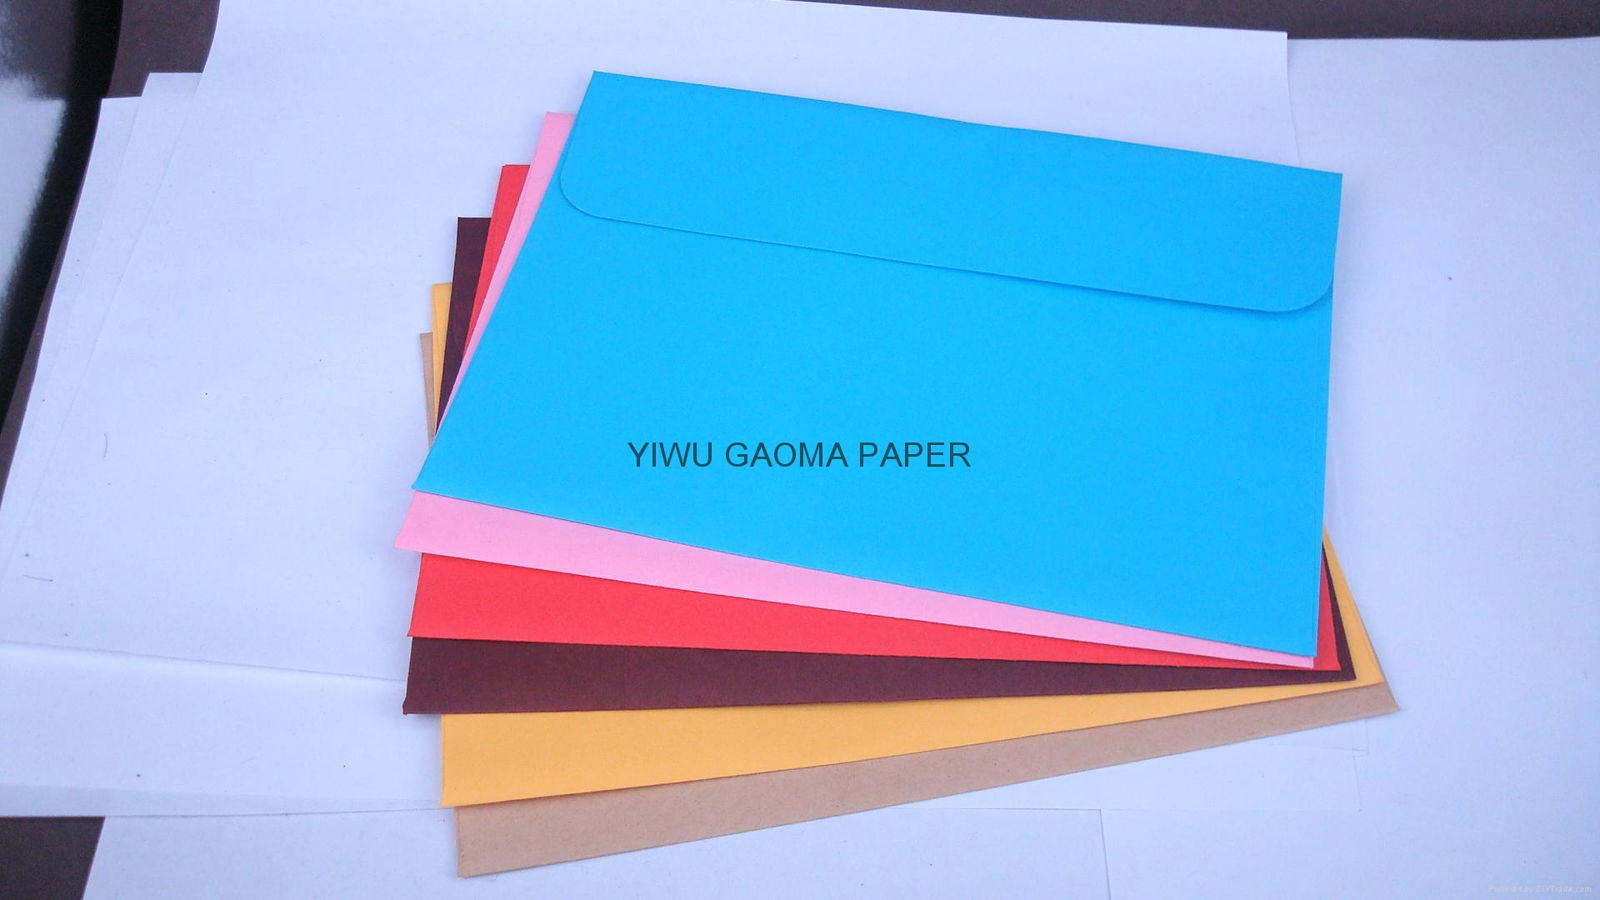 厂家直销西式彩色信封 自粘式 120g双胶纸 mailer